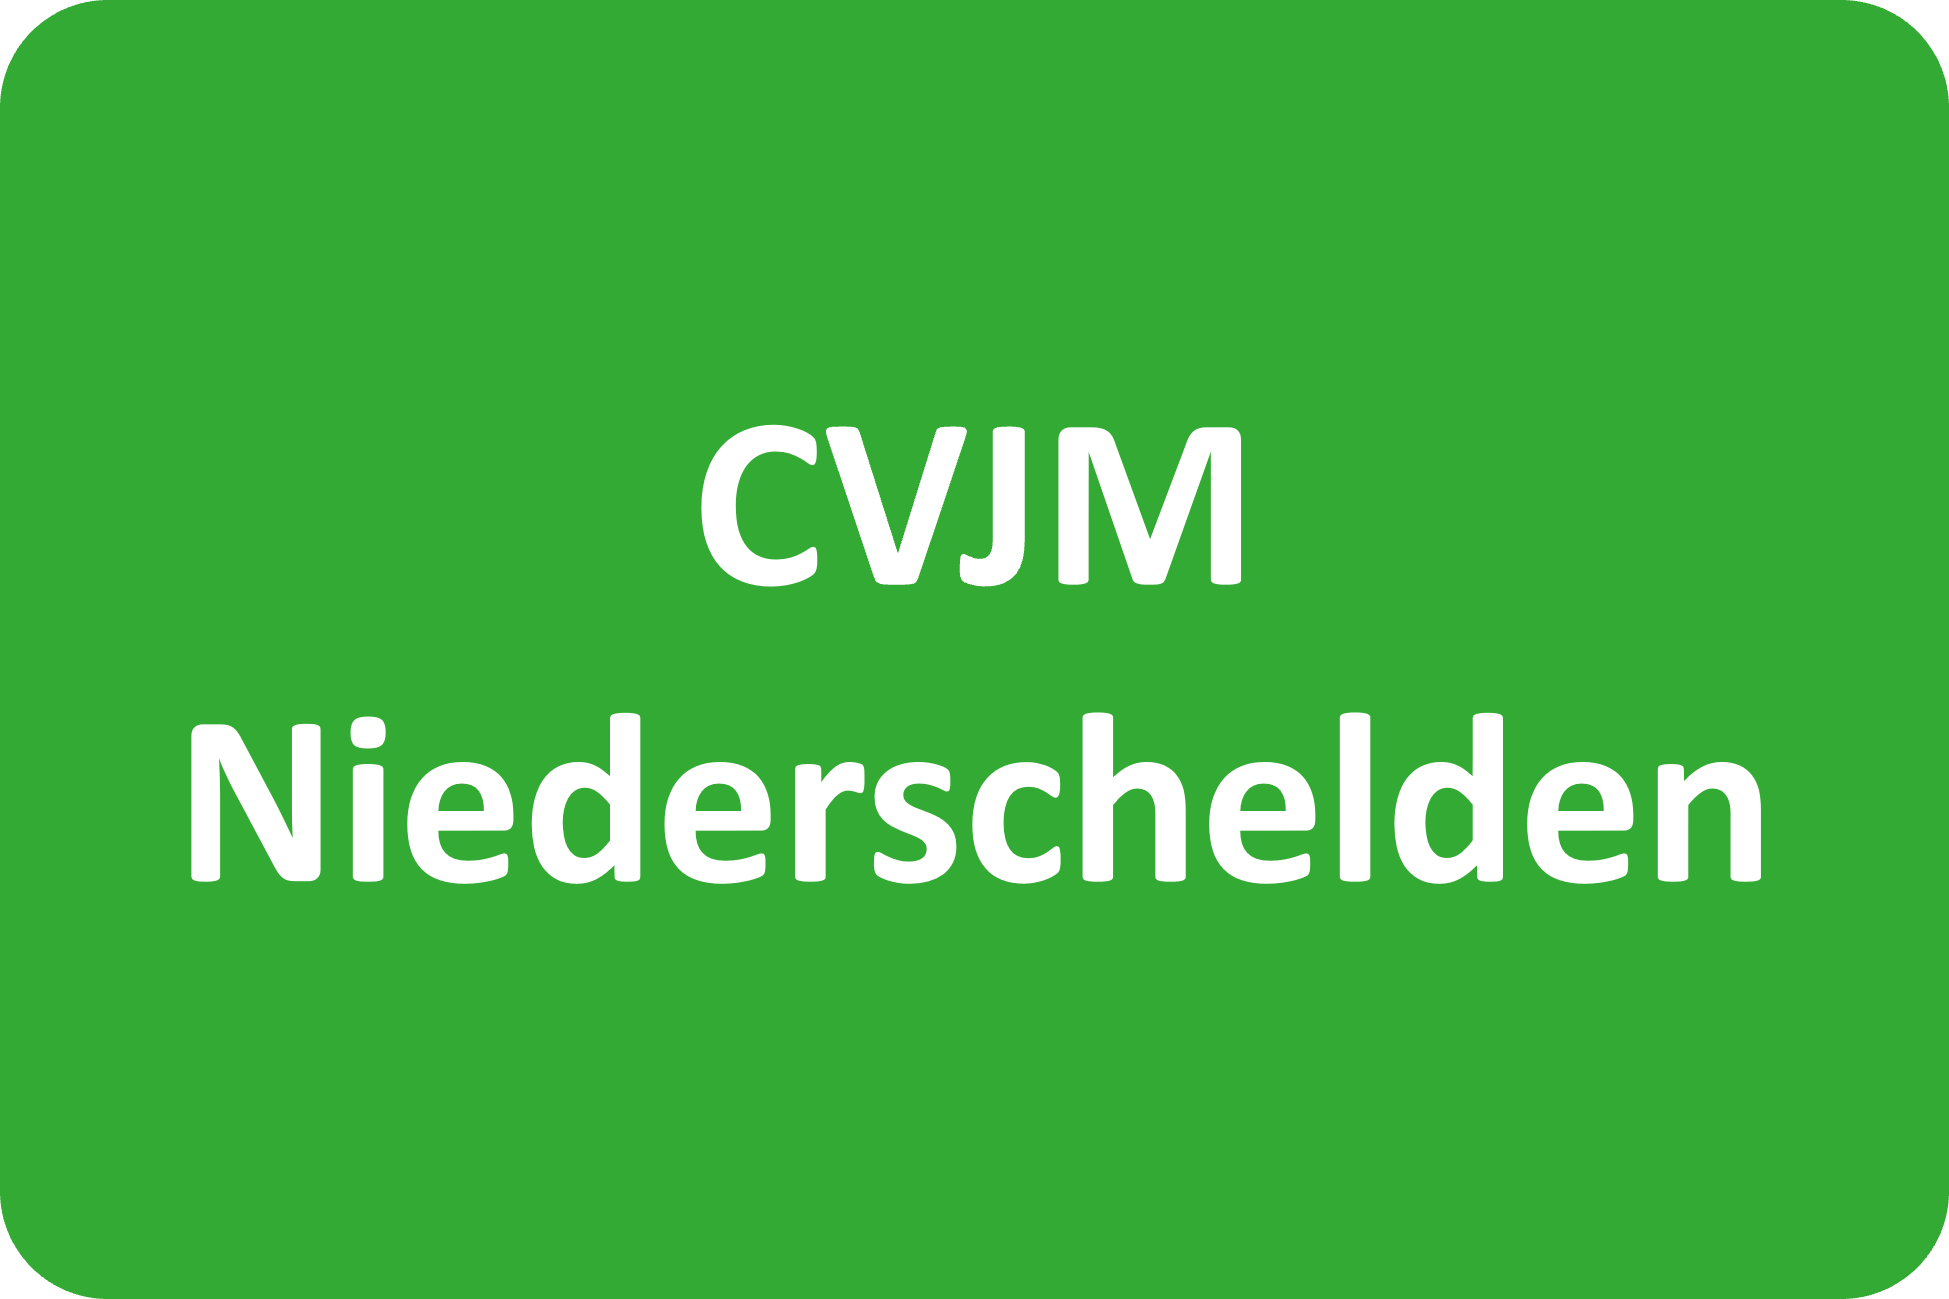 CVJM Niederschelden